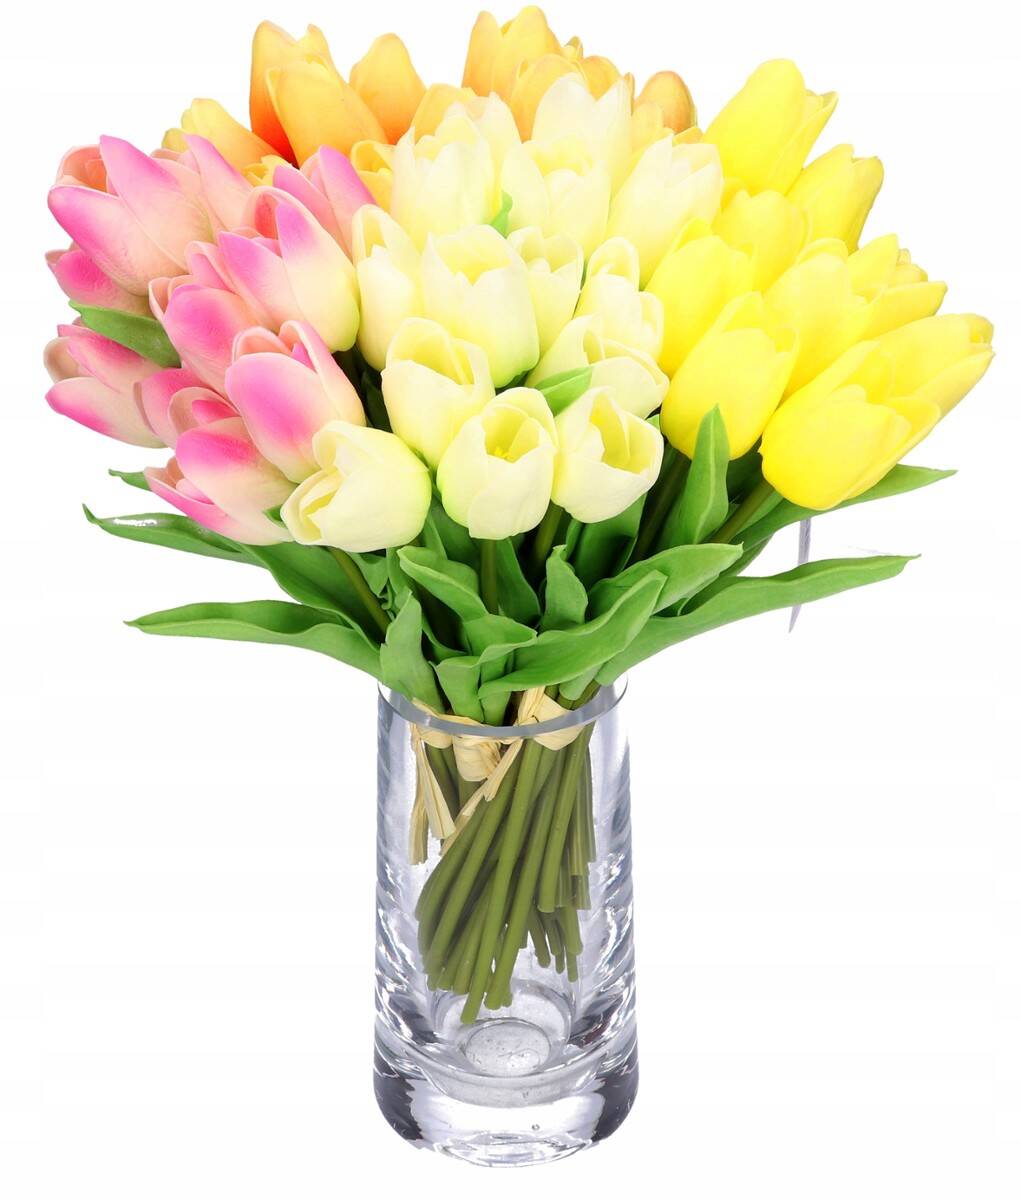 Tulipan z pianki x7 żółty (Zdjęcie 20)